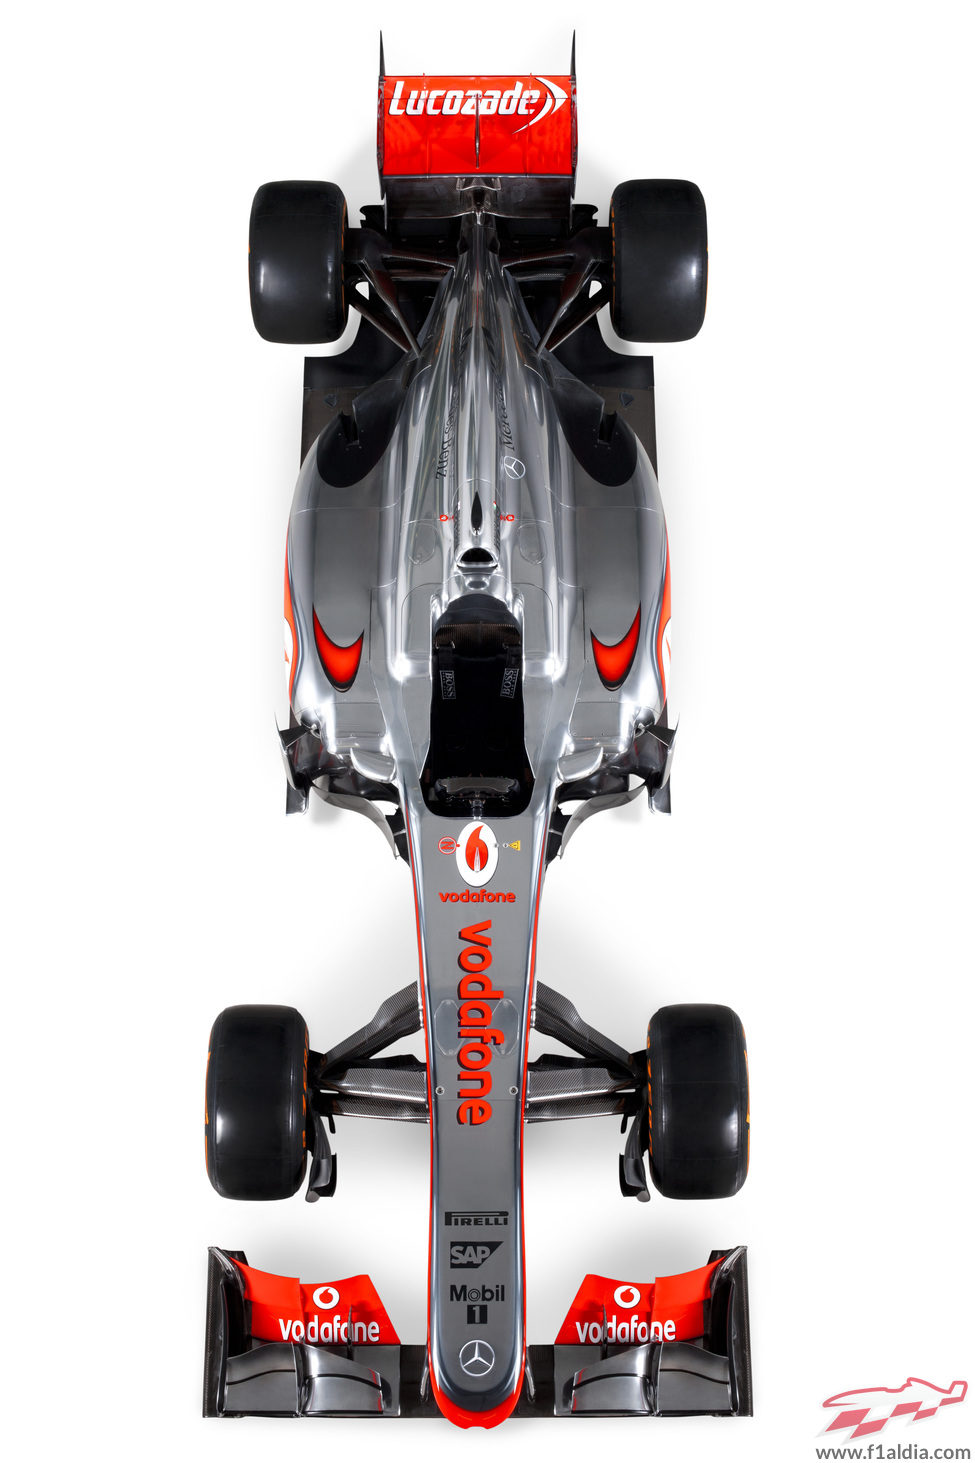 El McLaren MP4-28 en vista superior